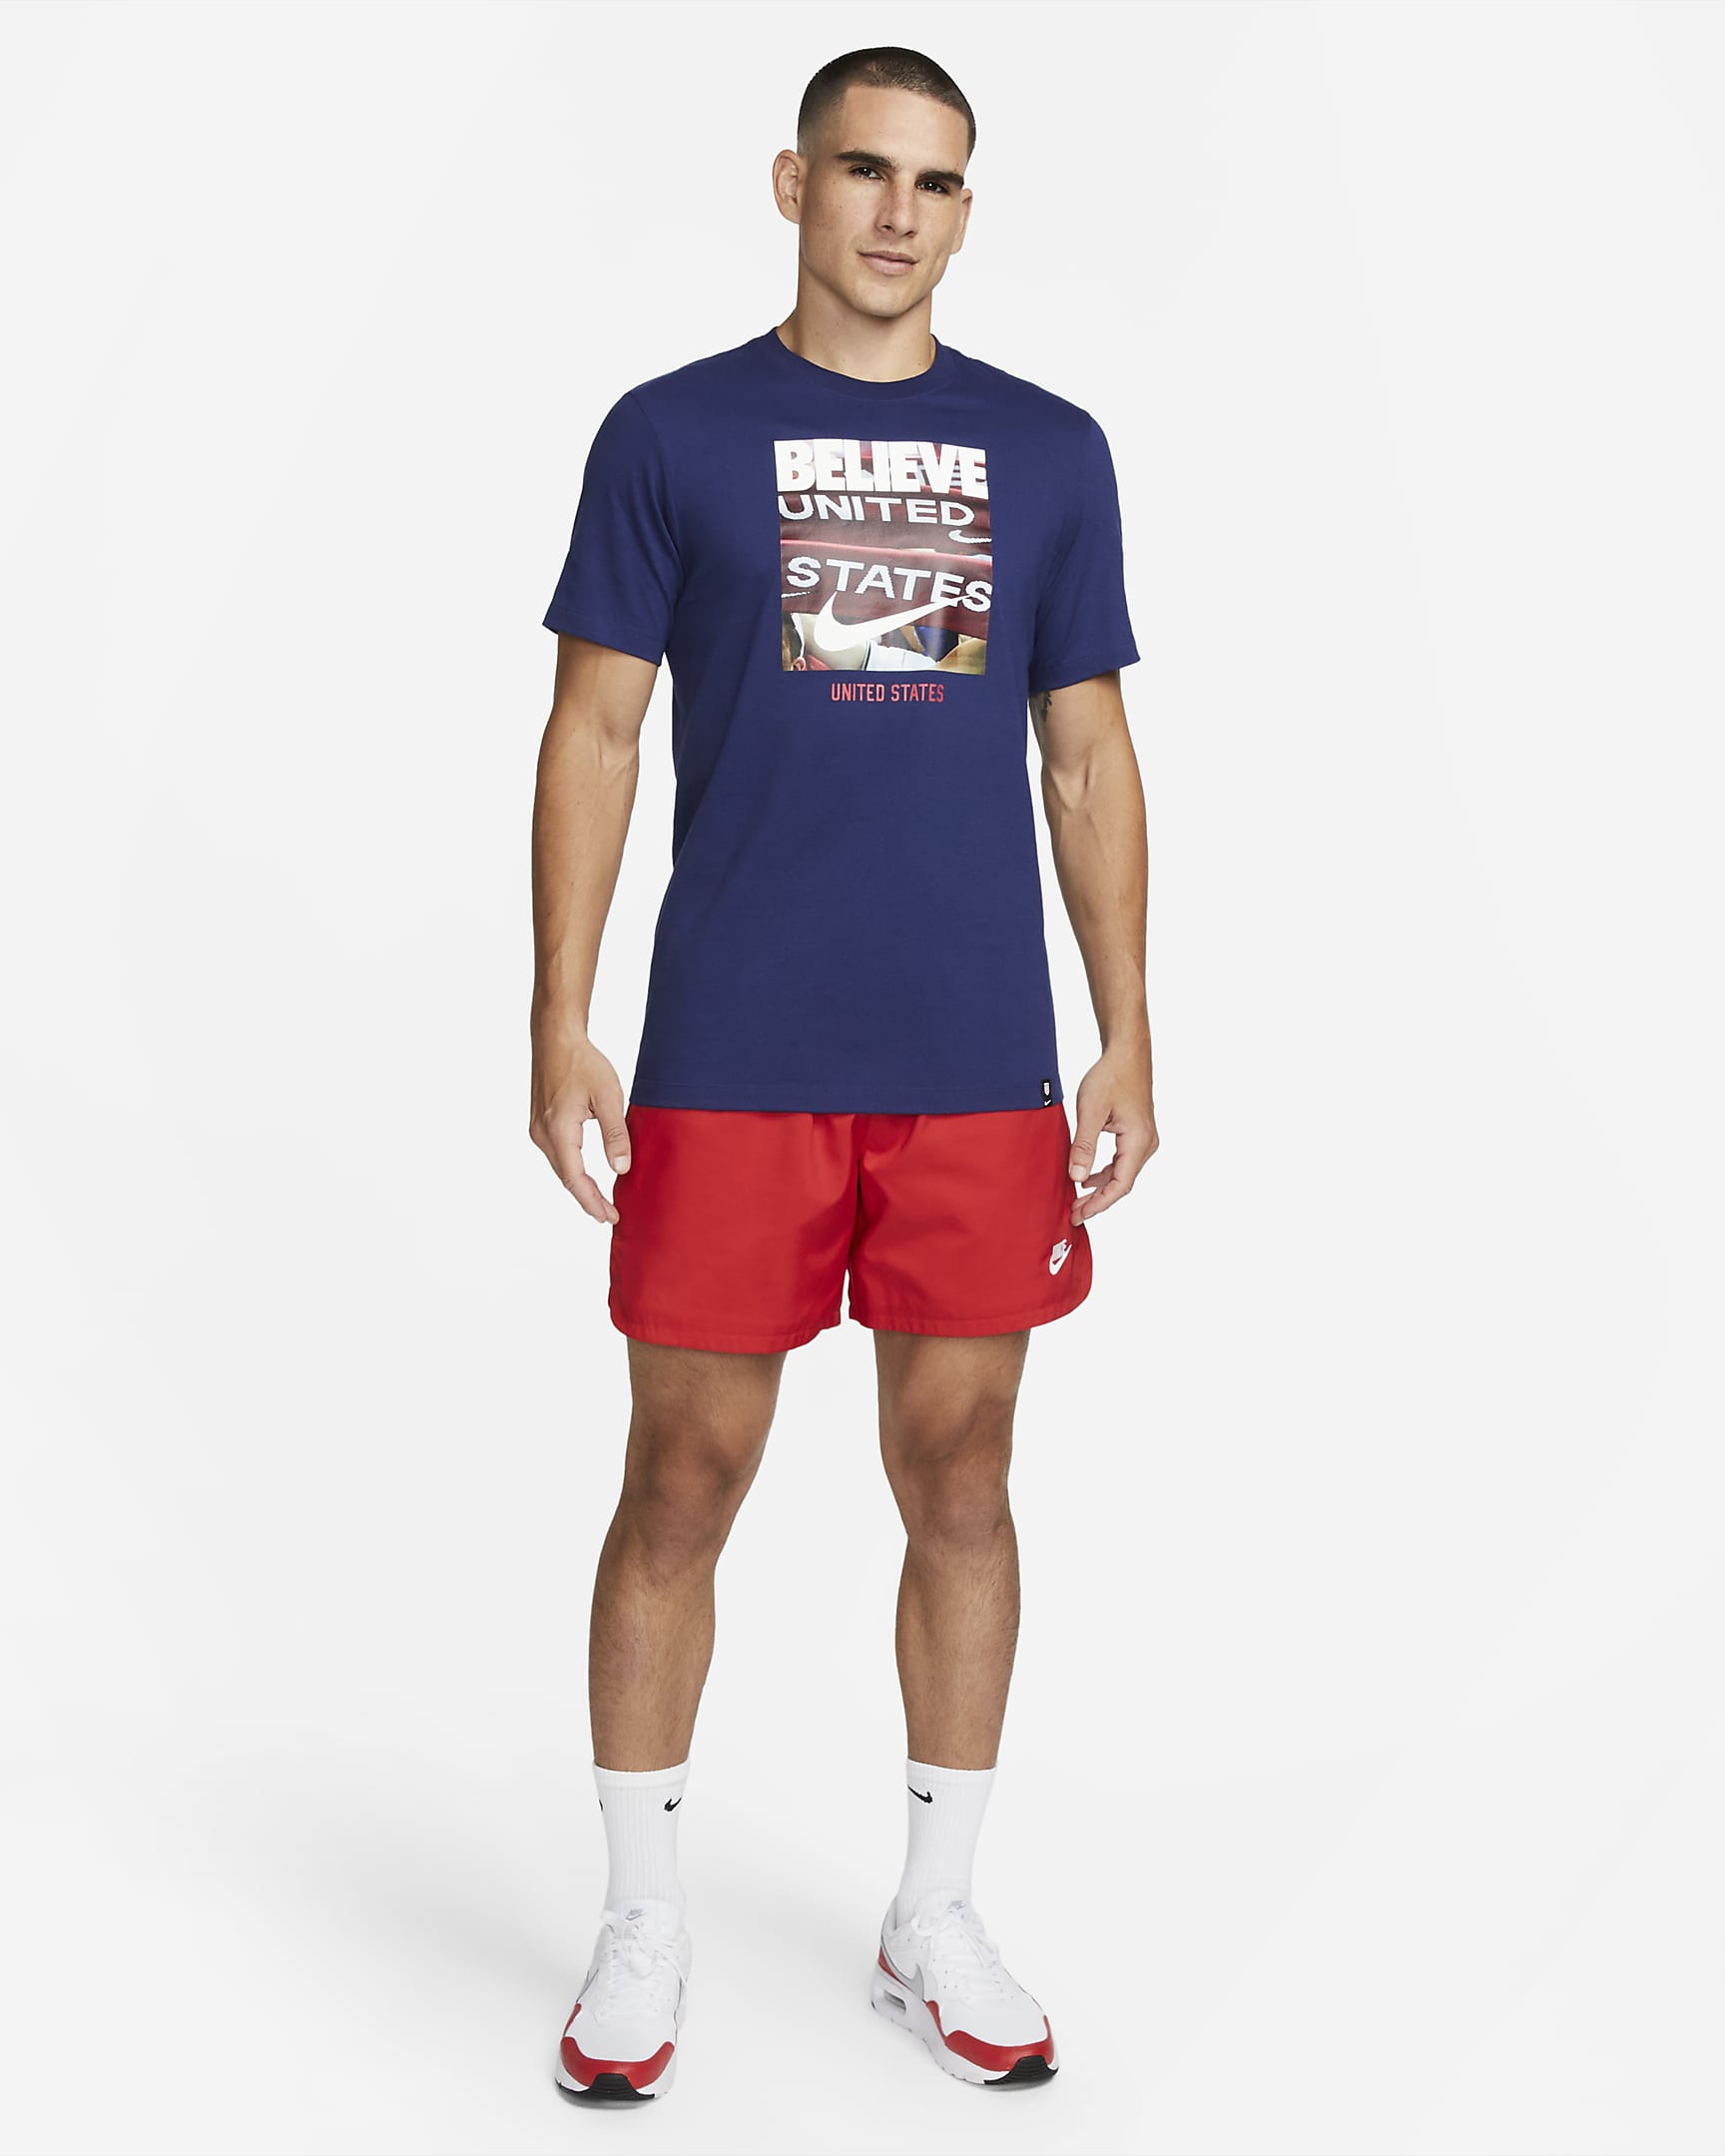 Playera para hombre Estados Unidos. Nike.com